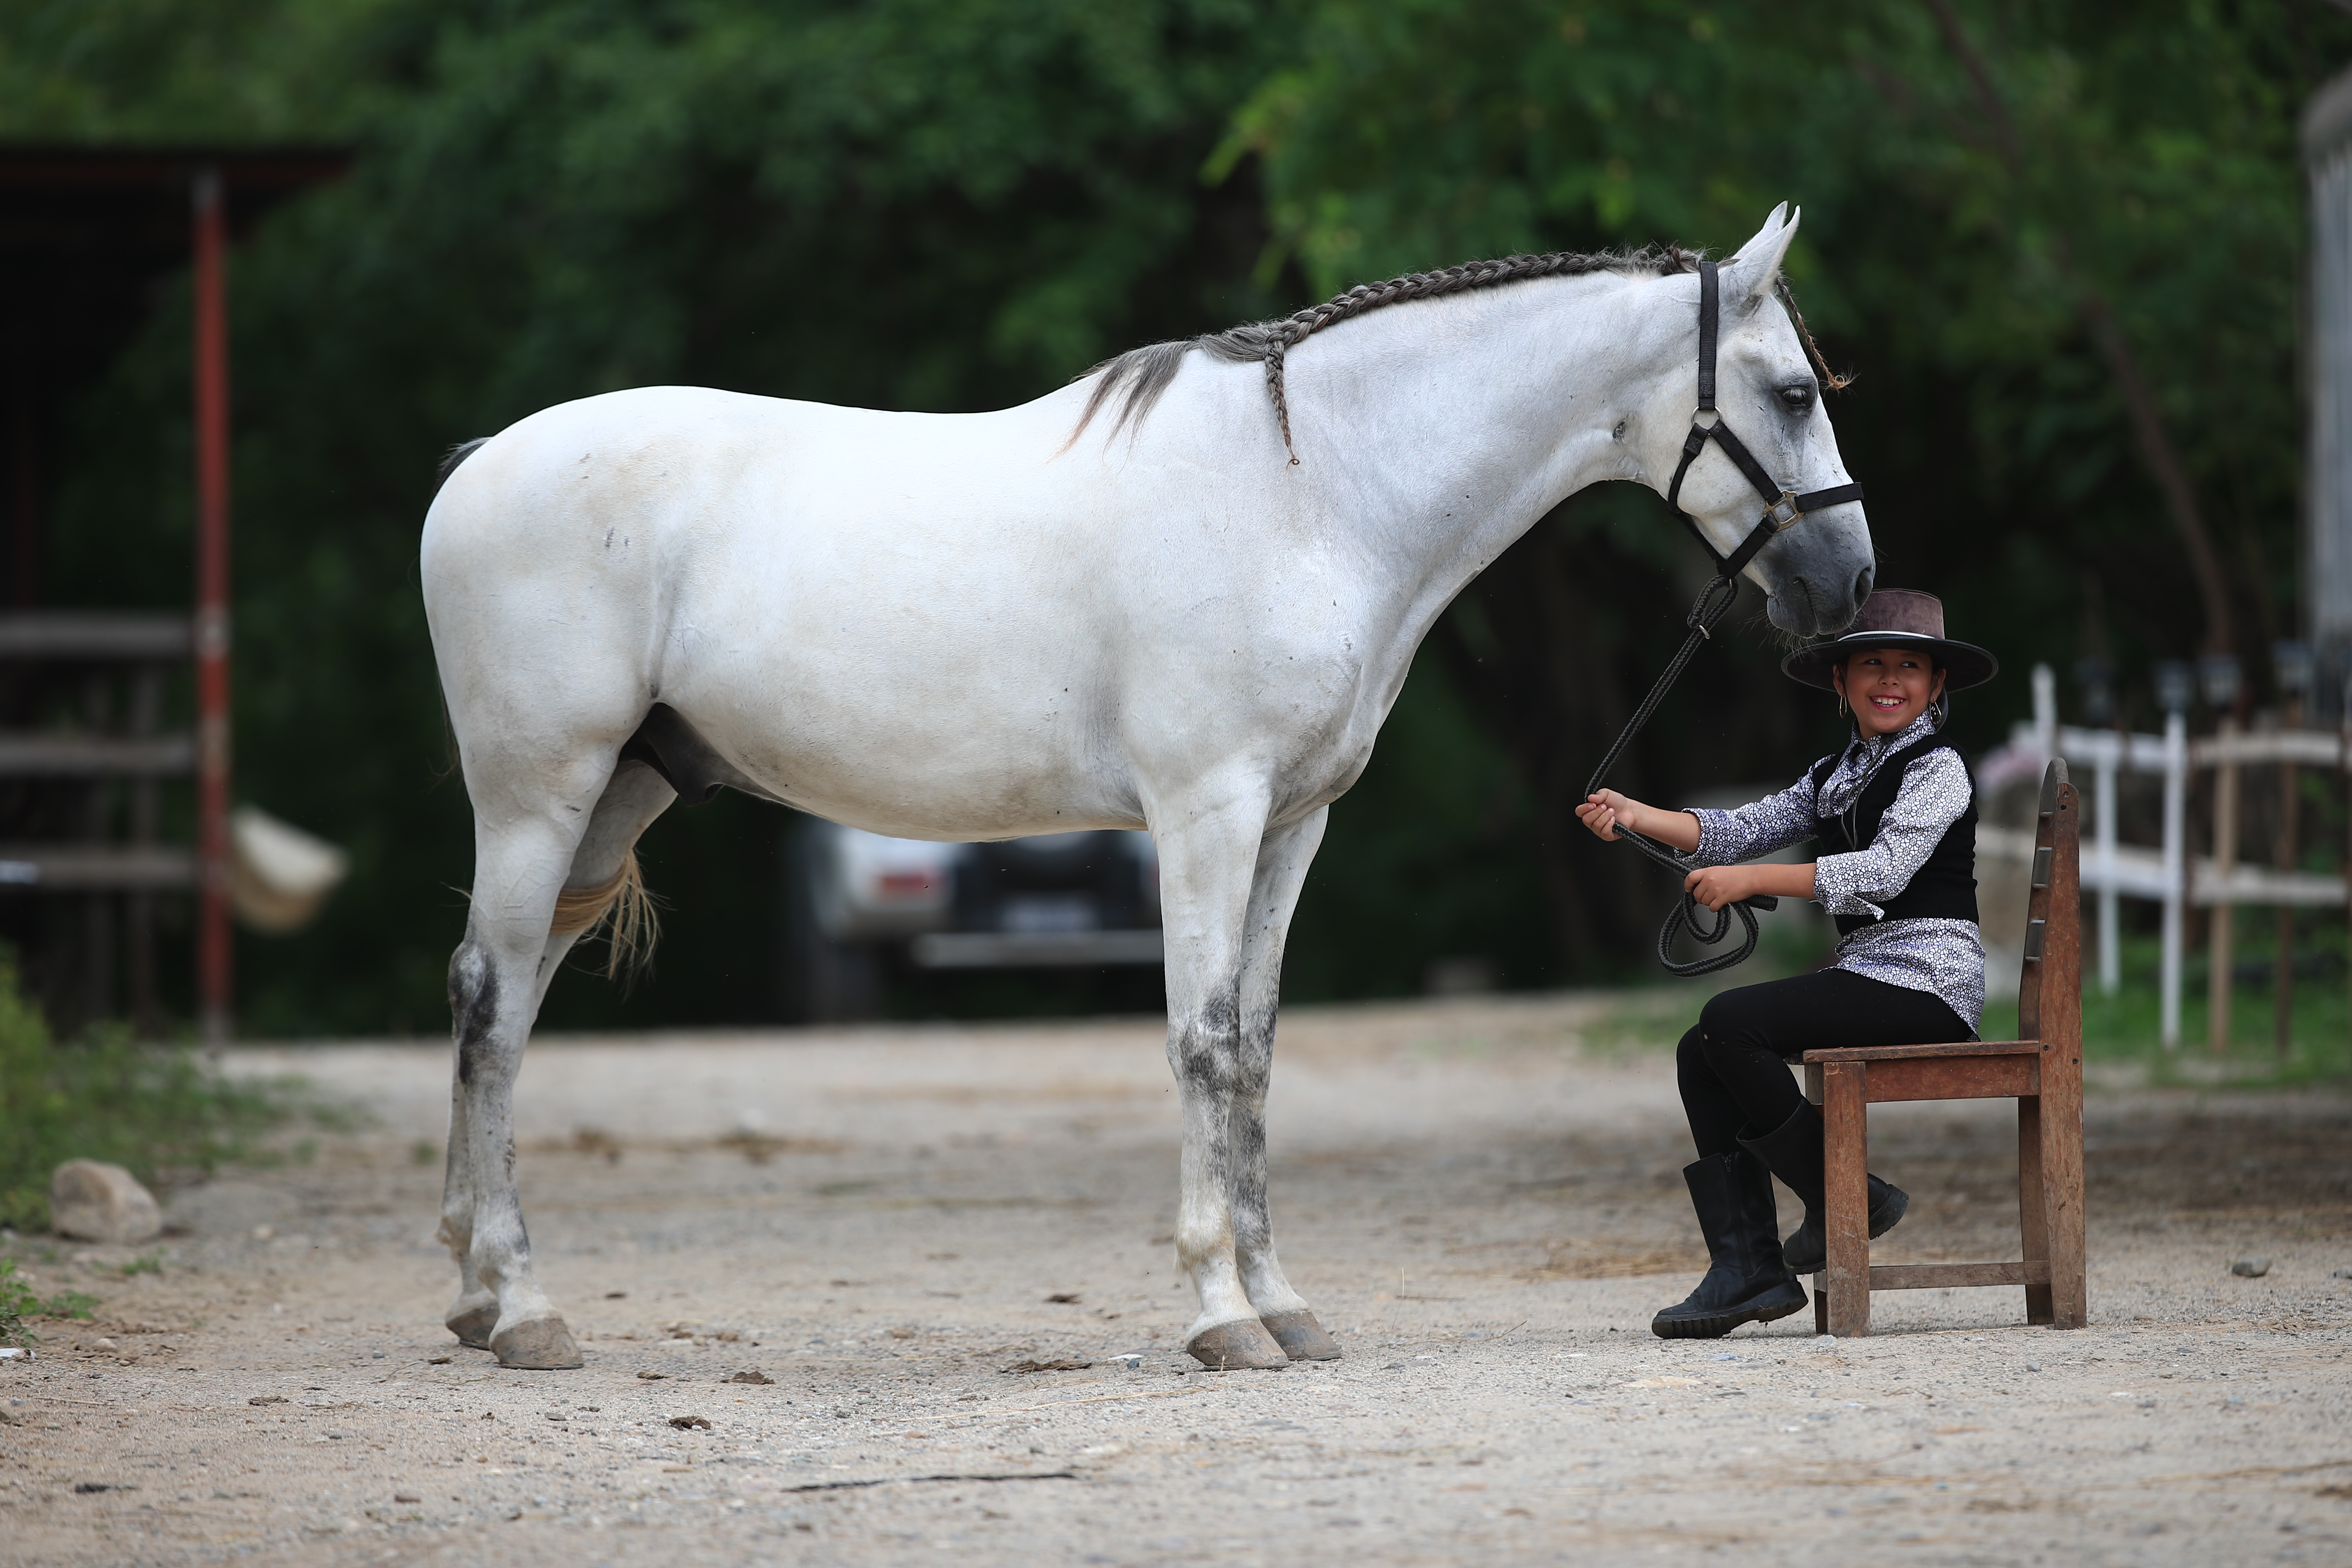 La convivencia con los caballos genera un vínculo de pertenencia en la niñez y juventud. (Foto Prensa Libre: Carlos Hernández).